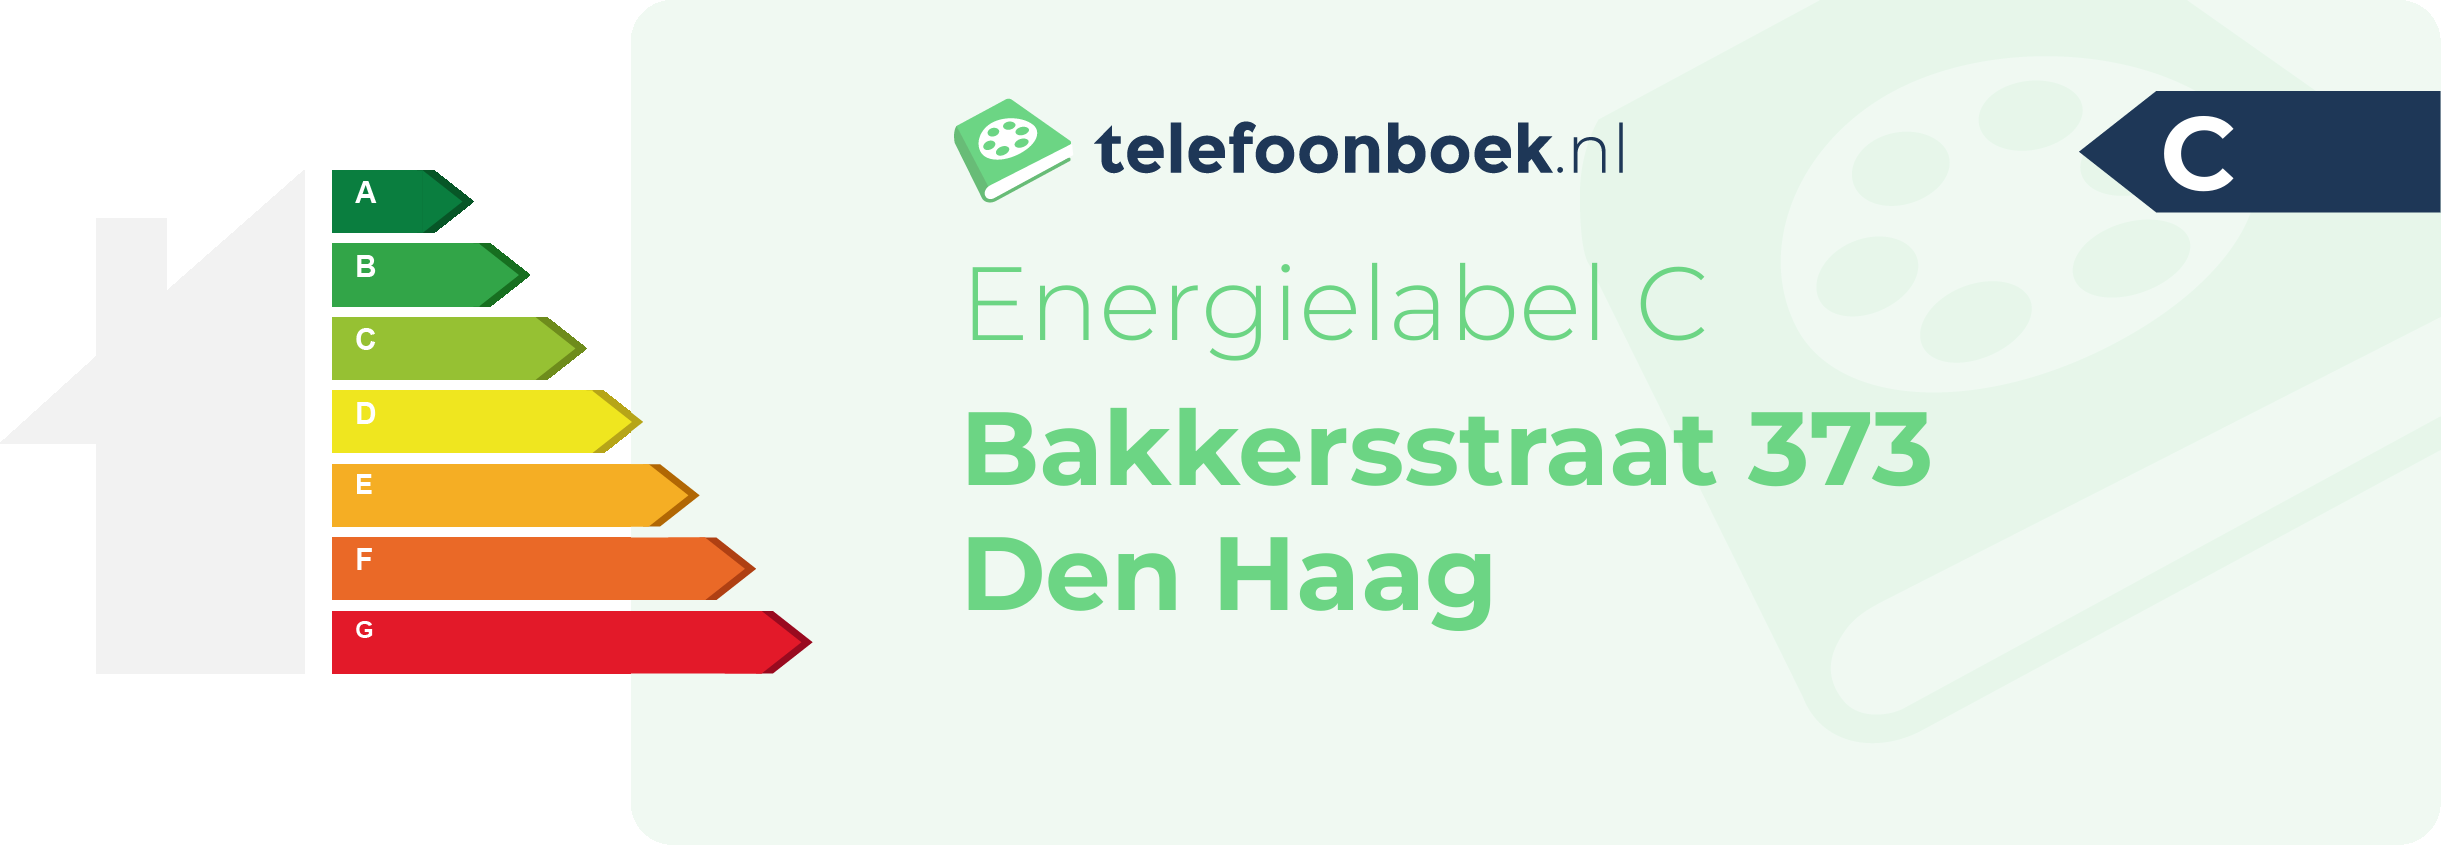 Energielabel Bakkersstraat 373 Den Haag